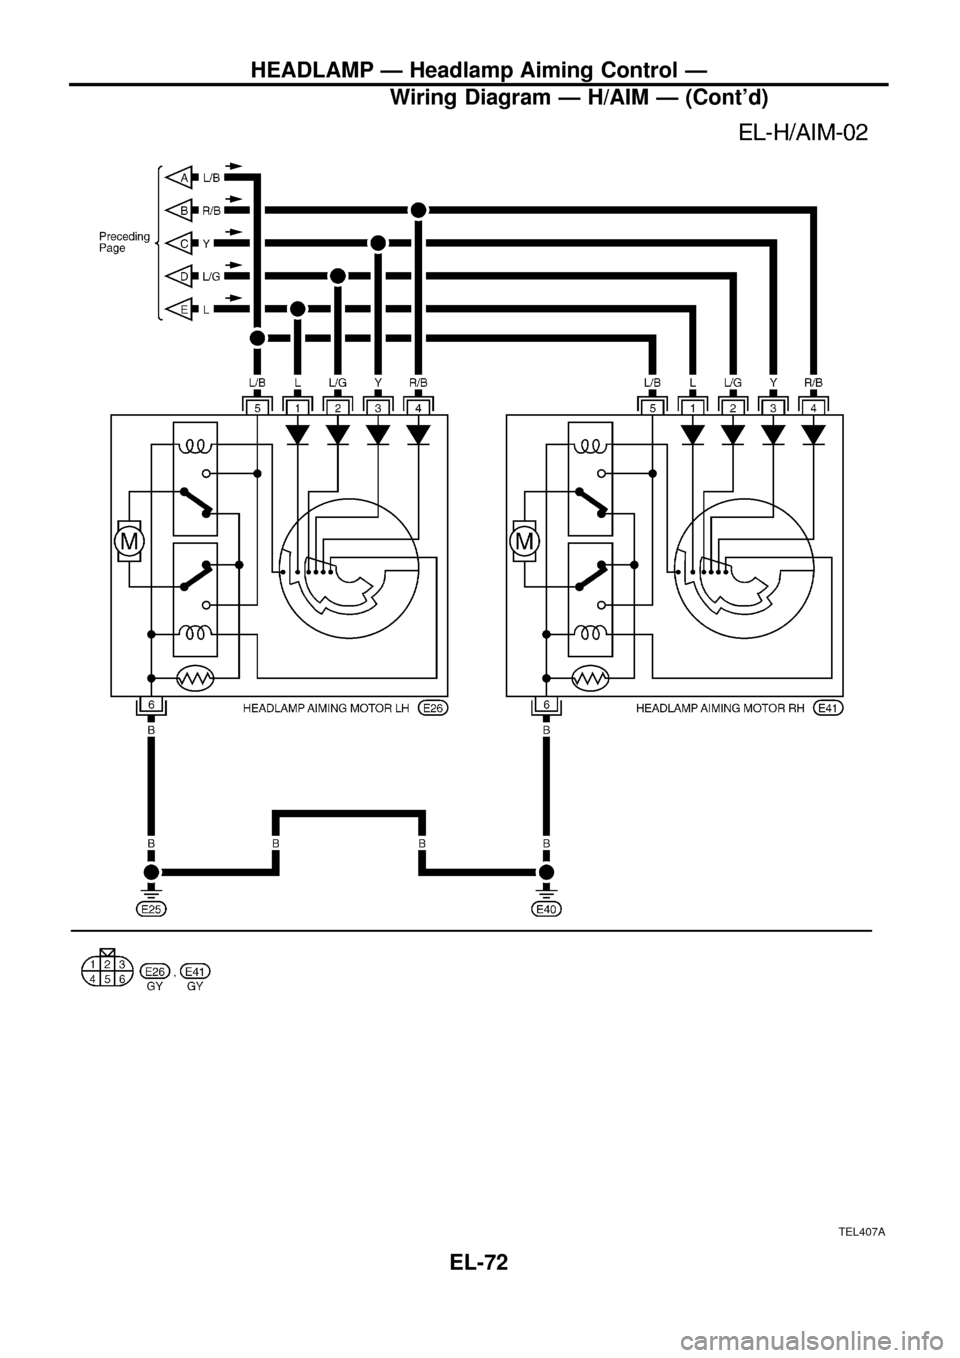 NISSAN PATROL 1998 Y61 / 5.G Electrical System Manual PDF TEL407A
HEADLAMP Ð Headlamp Aiming Control Ð
Wiring Diagram Ð H/AIM Ð (Contd)
EL-72 